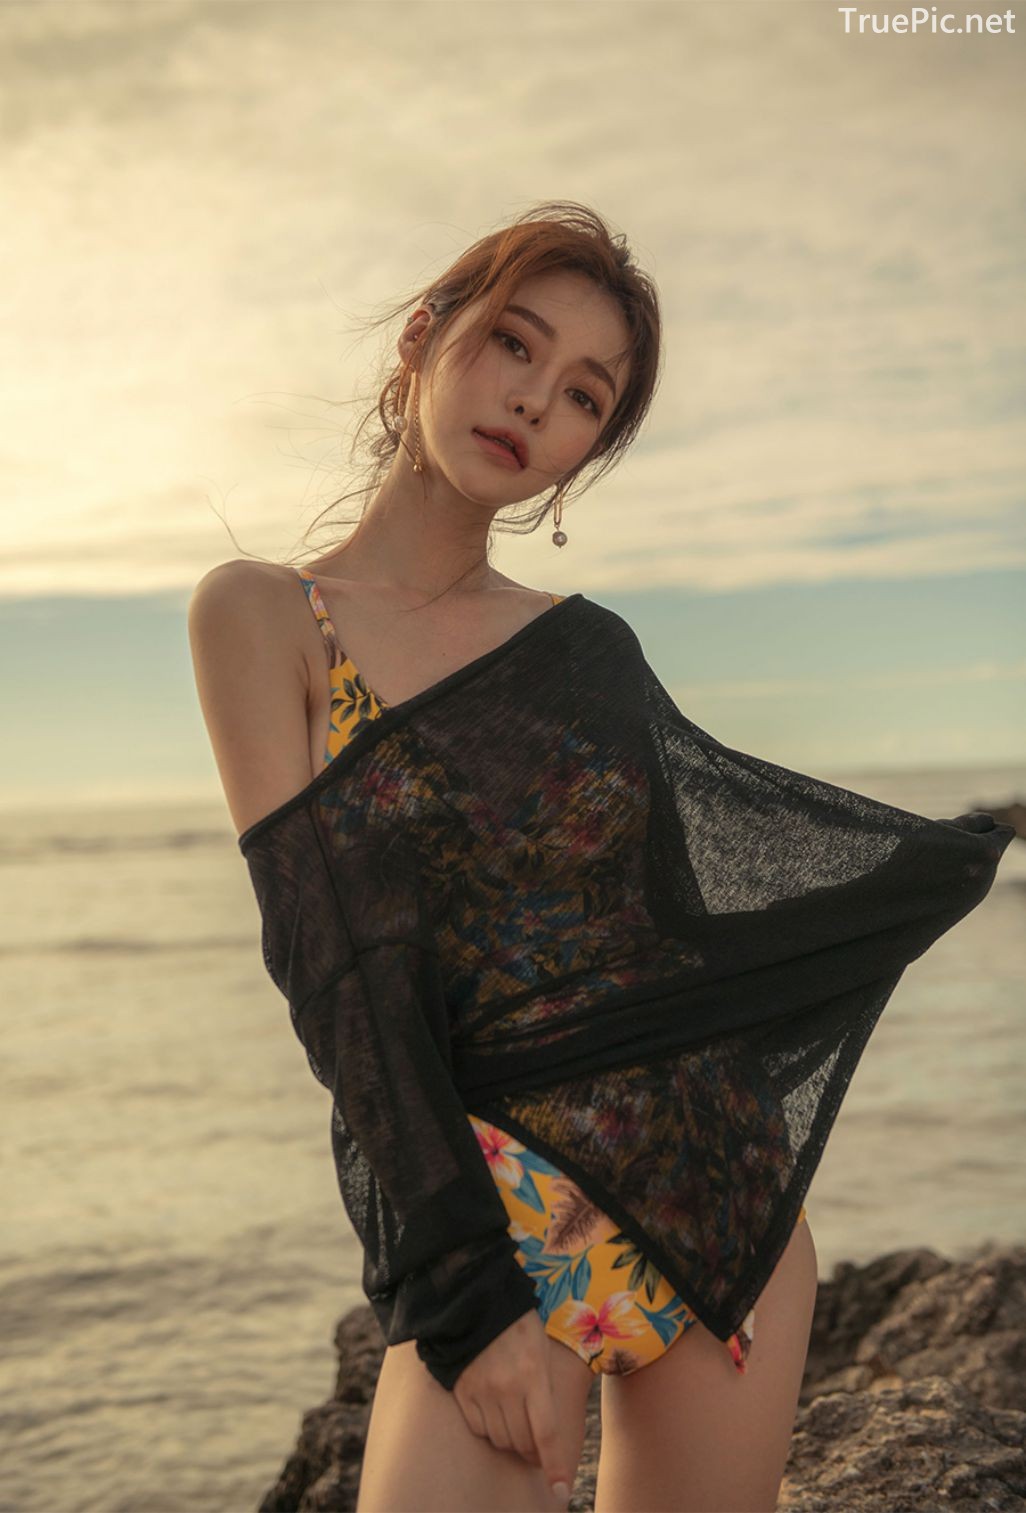 Korean Fashion Model - Kim Moon Hee as an Angel in Summer Swimsuit - TruePic.net - Picture 13